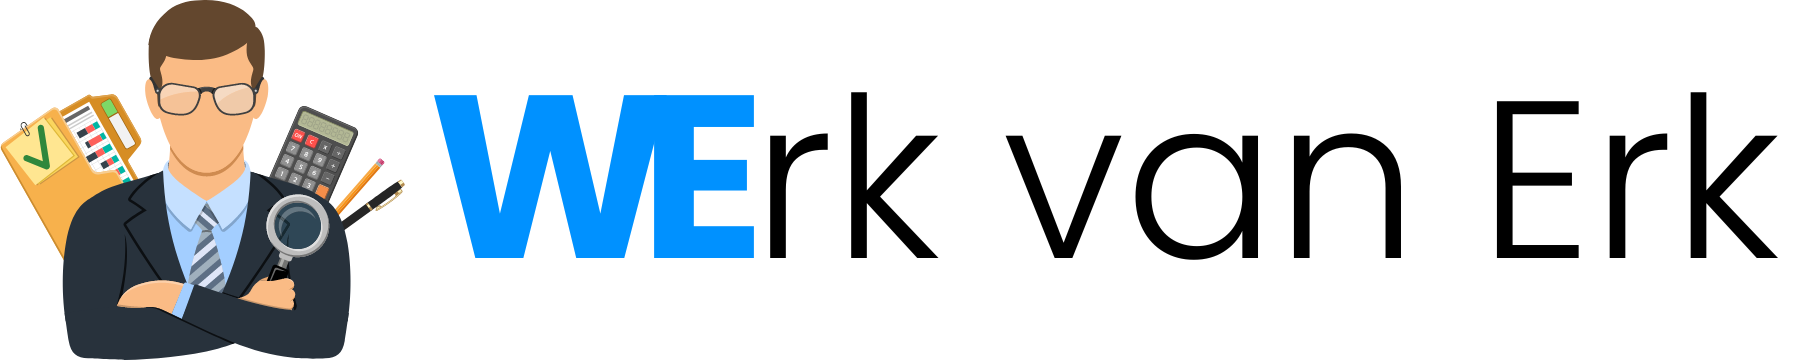 Werk van Erk logo